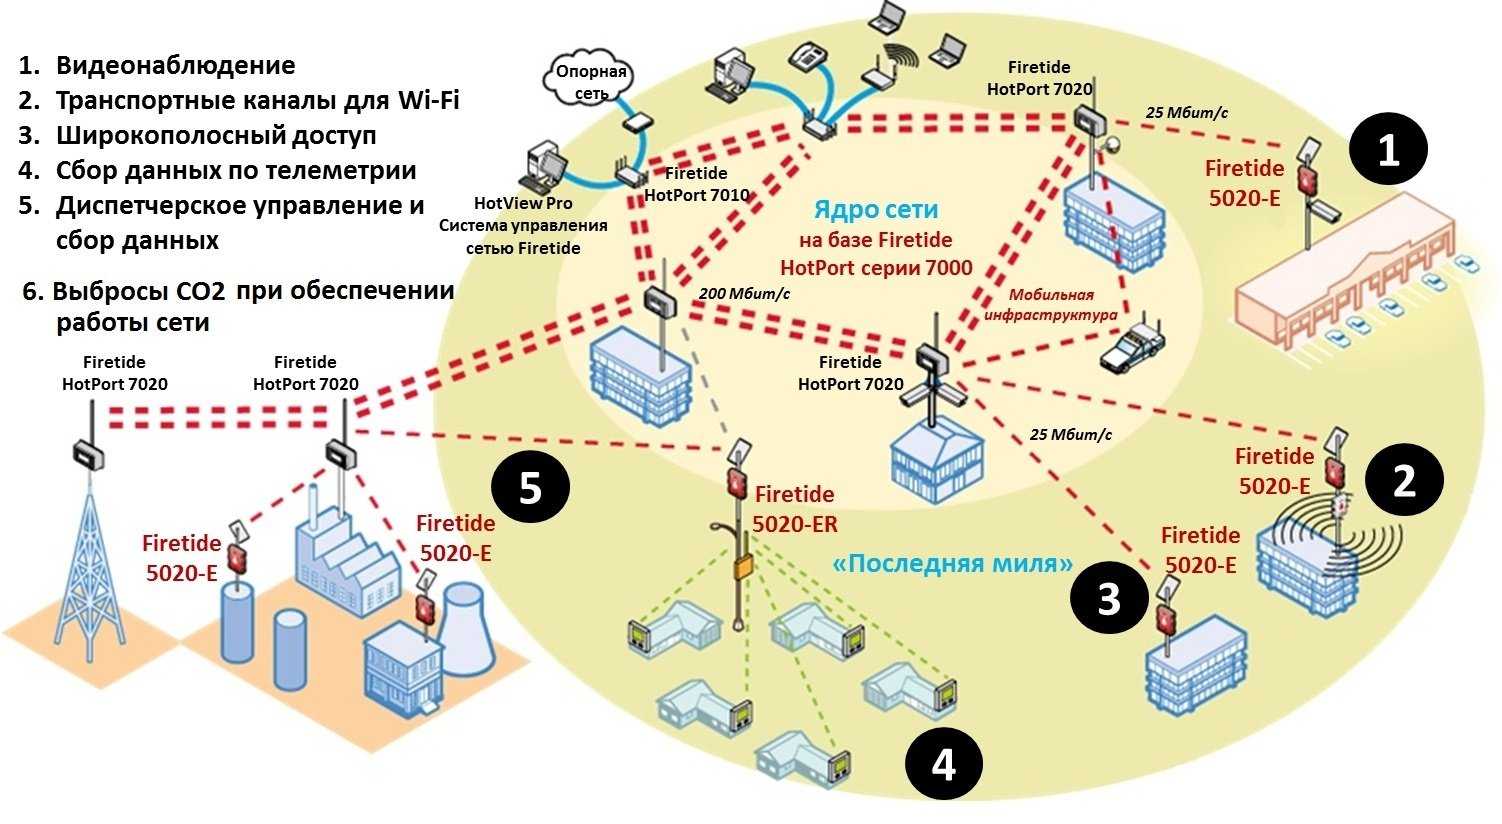 Cкорость передачи данных по wifi по стандартам сети